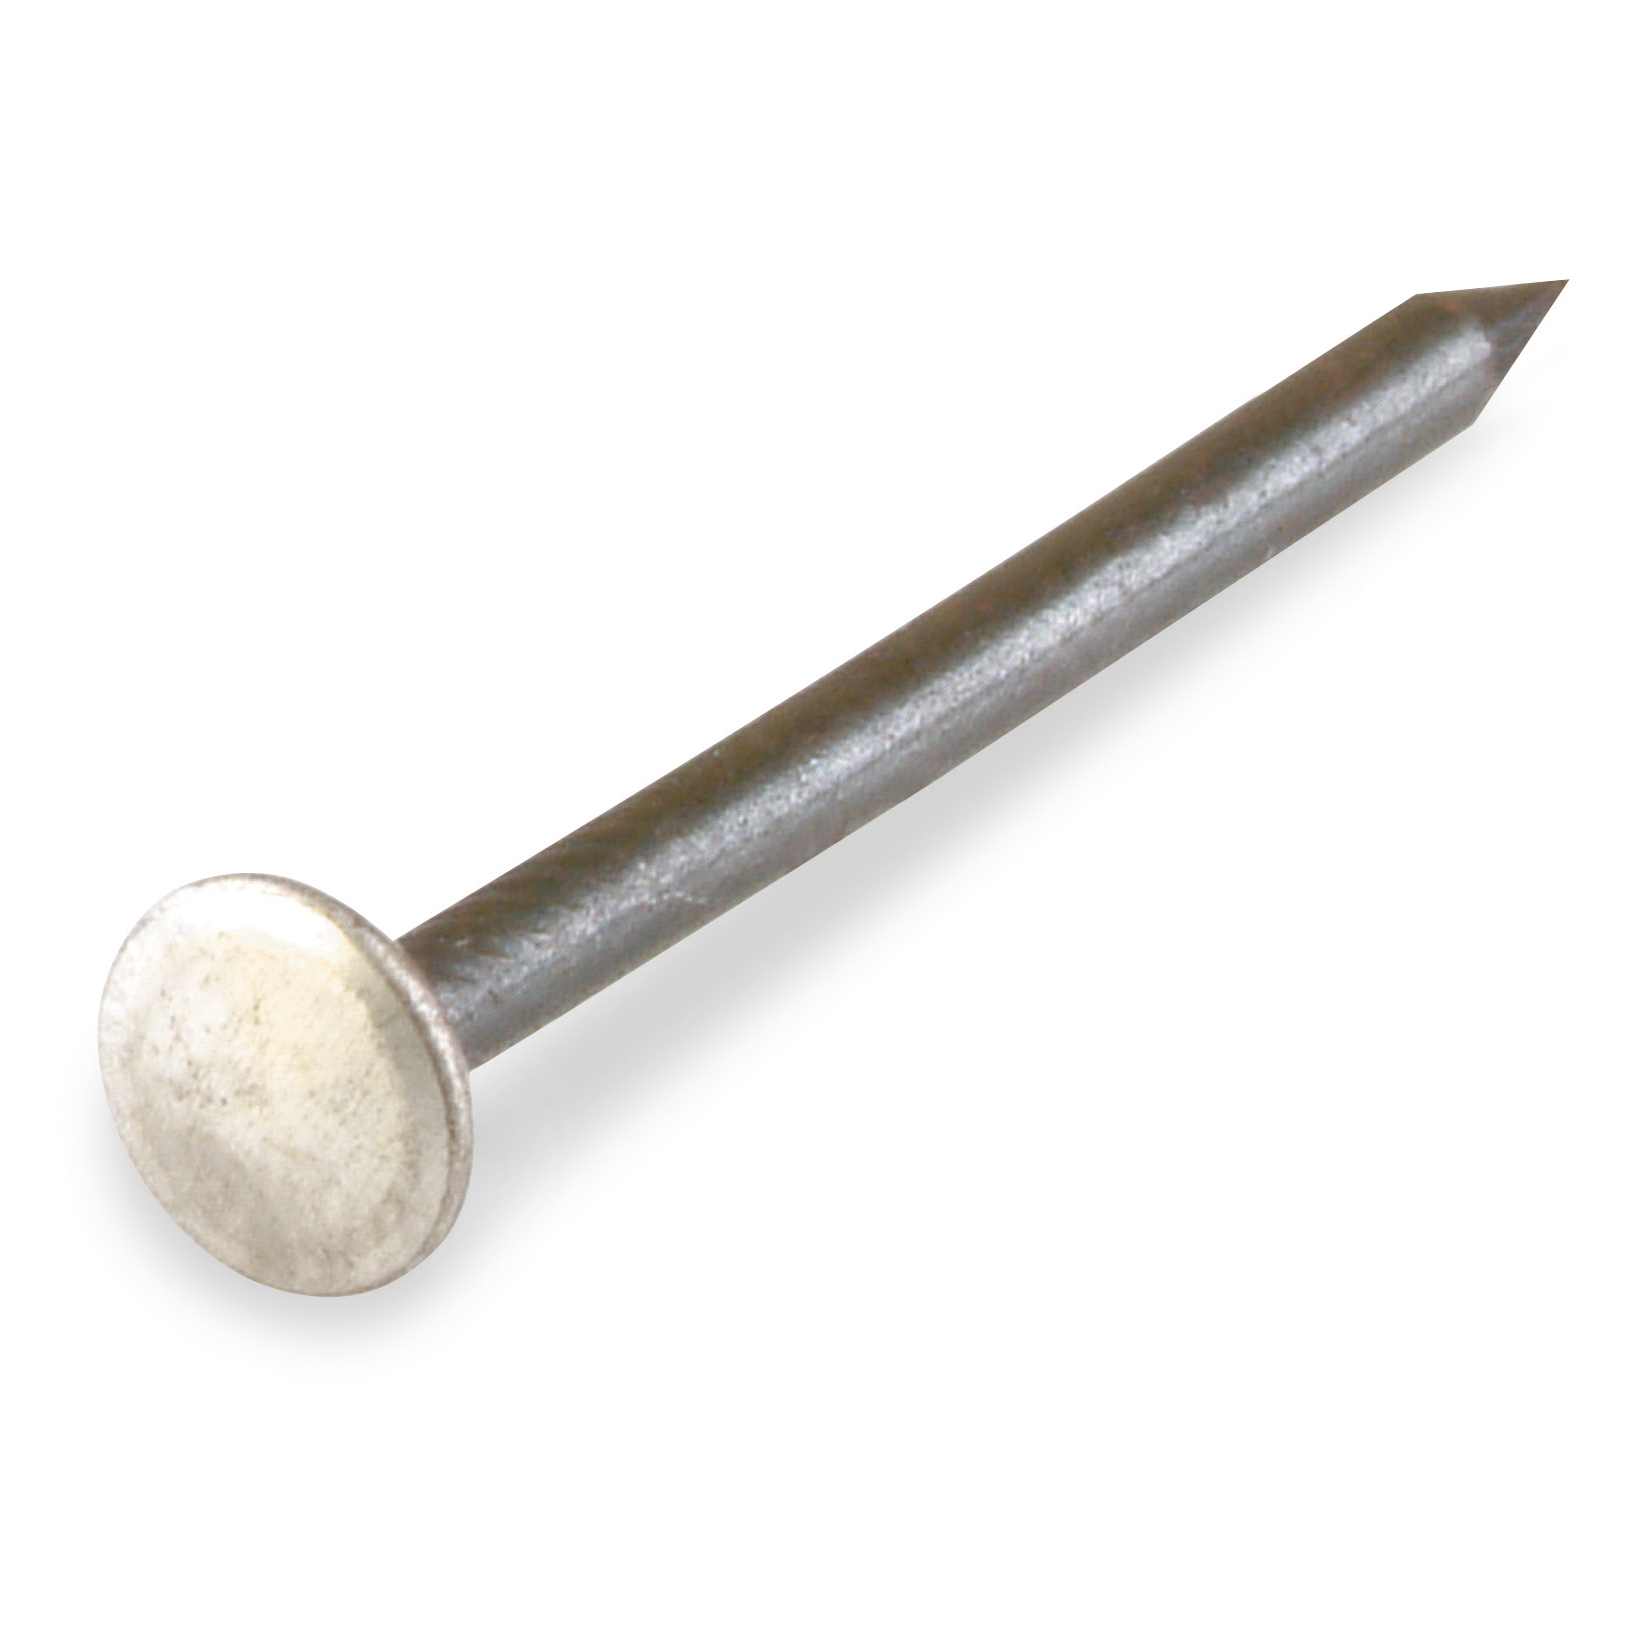 RP Nägel gehärtete Stahl-Nägel Stahl-Stifte gebläut 2,0x15 u 2,0x50 mm je 1kg 